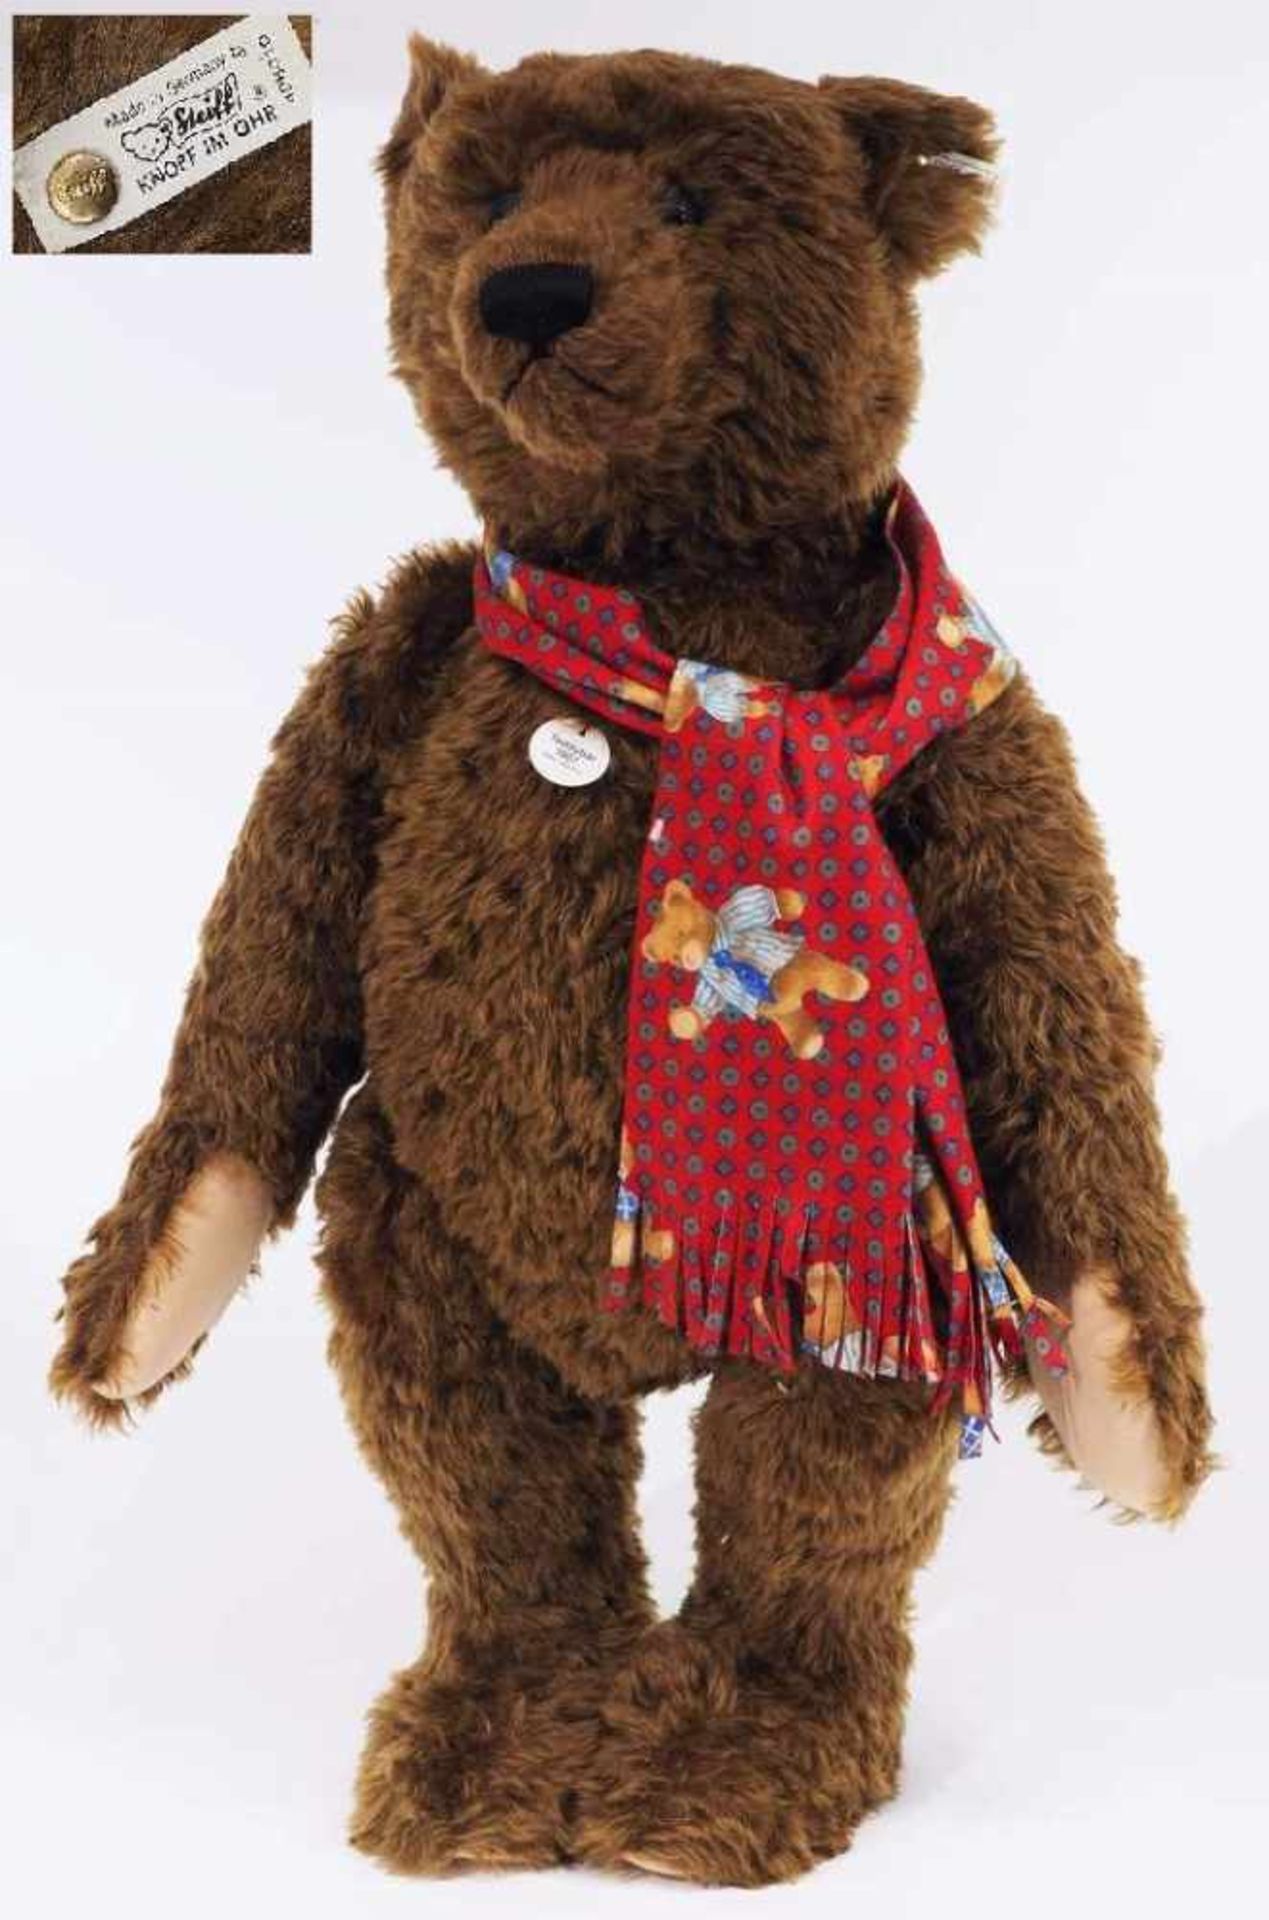 Großer STEIFF Original Teddybär Nr. 04034, 1993, Replik von 1907. Großer STEIFF Original Teddybär